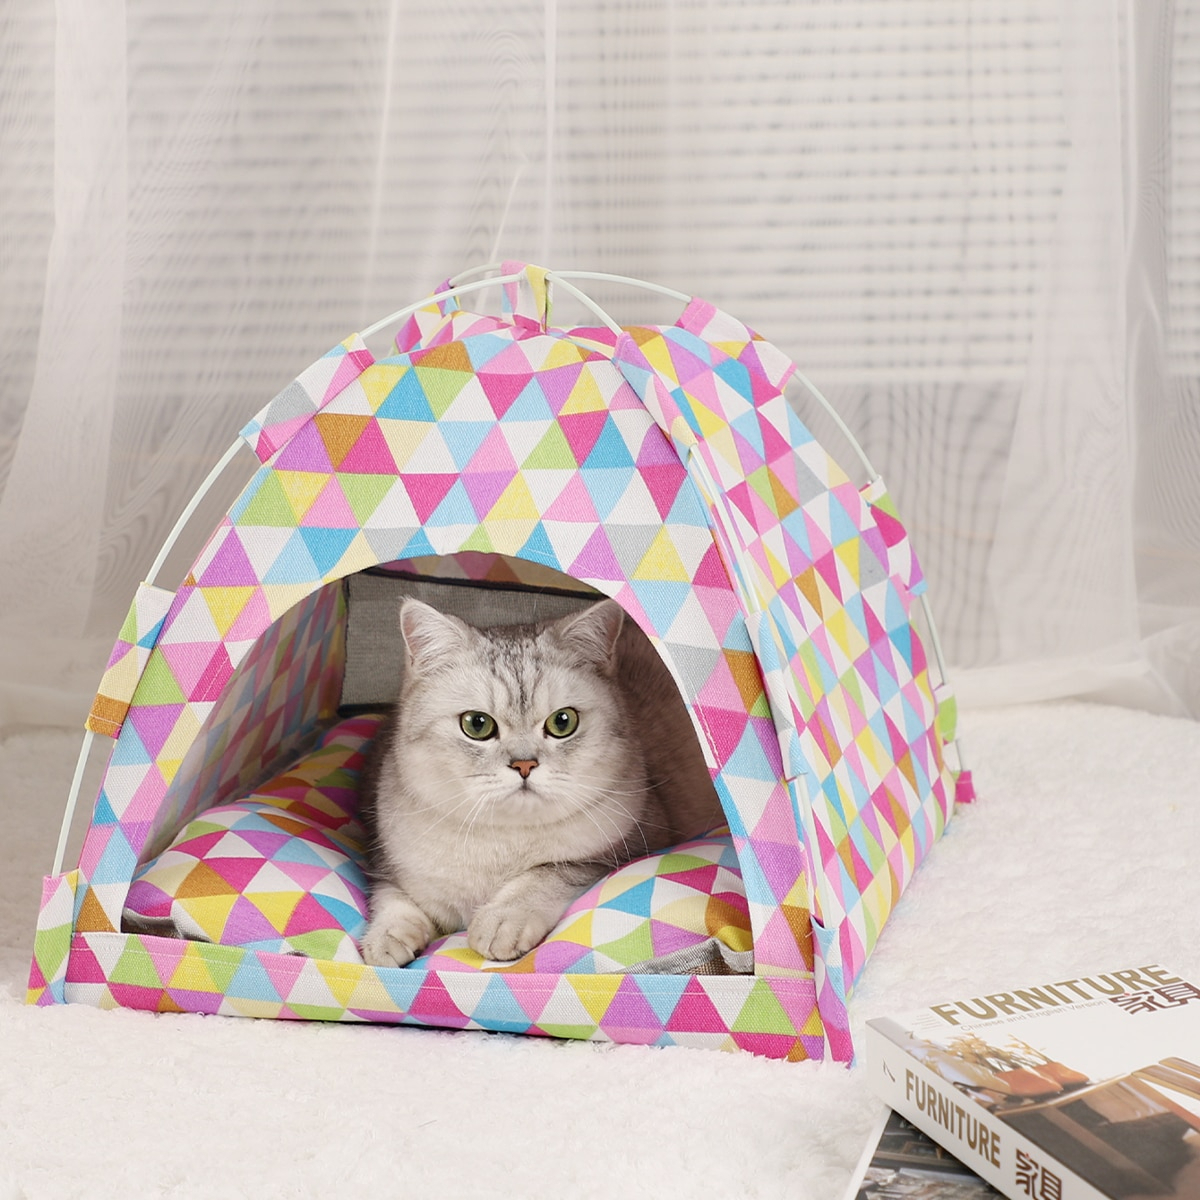  для домашних животных палатка house bed кошка собака диван коврик подушка S размер красочный 